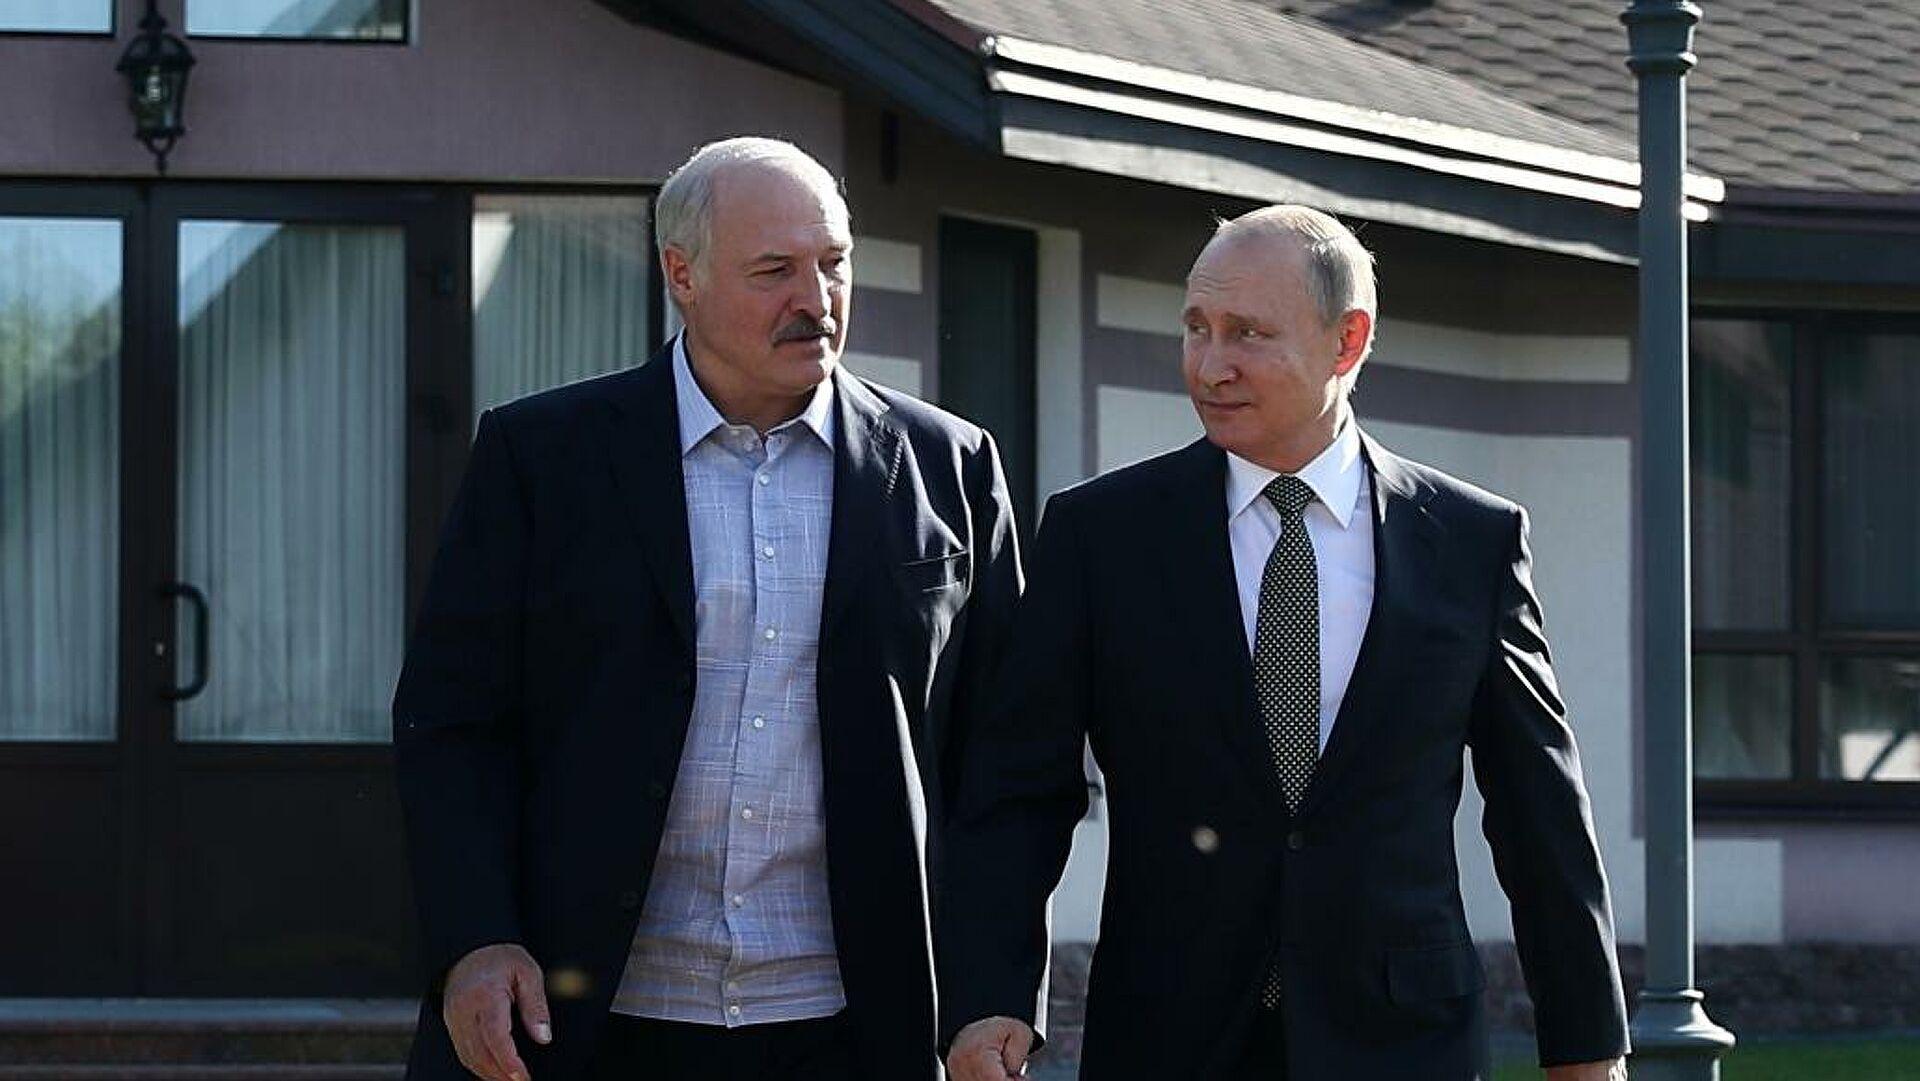 Песков рассказал о переговорах Путина и Лукашенко